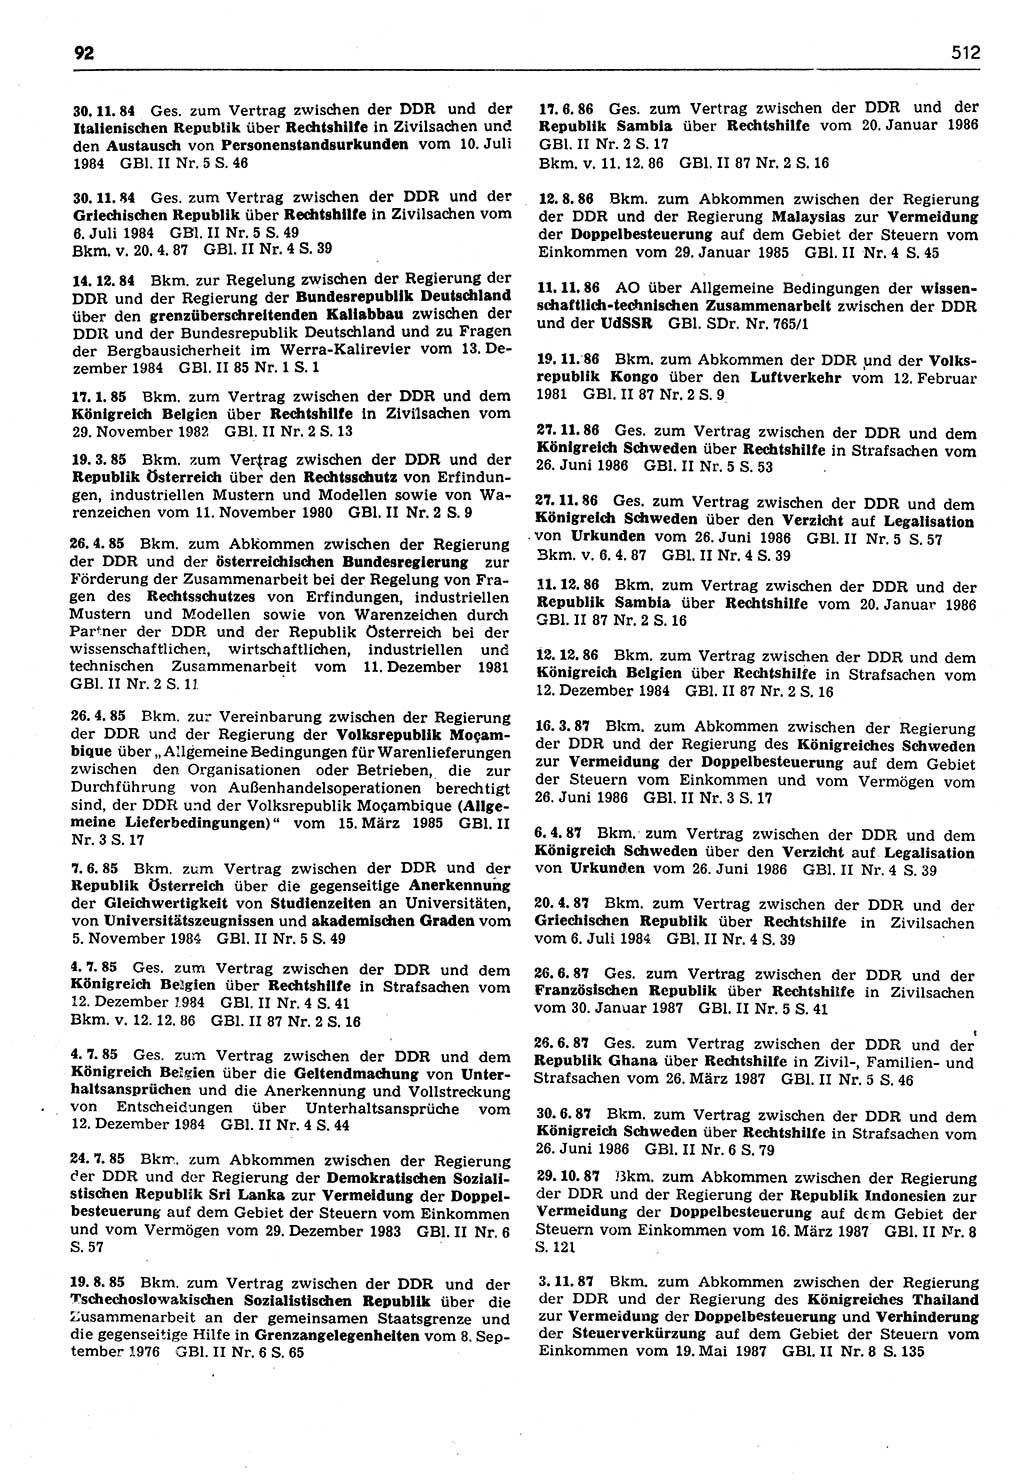 Das geltende Recht der Deutschen Demokratischen Republik (DDR) 1949-1988, Seite 512 (Gelt. R. DDR 1949-1988, S. 512)